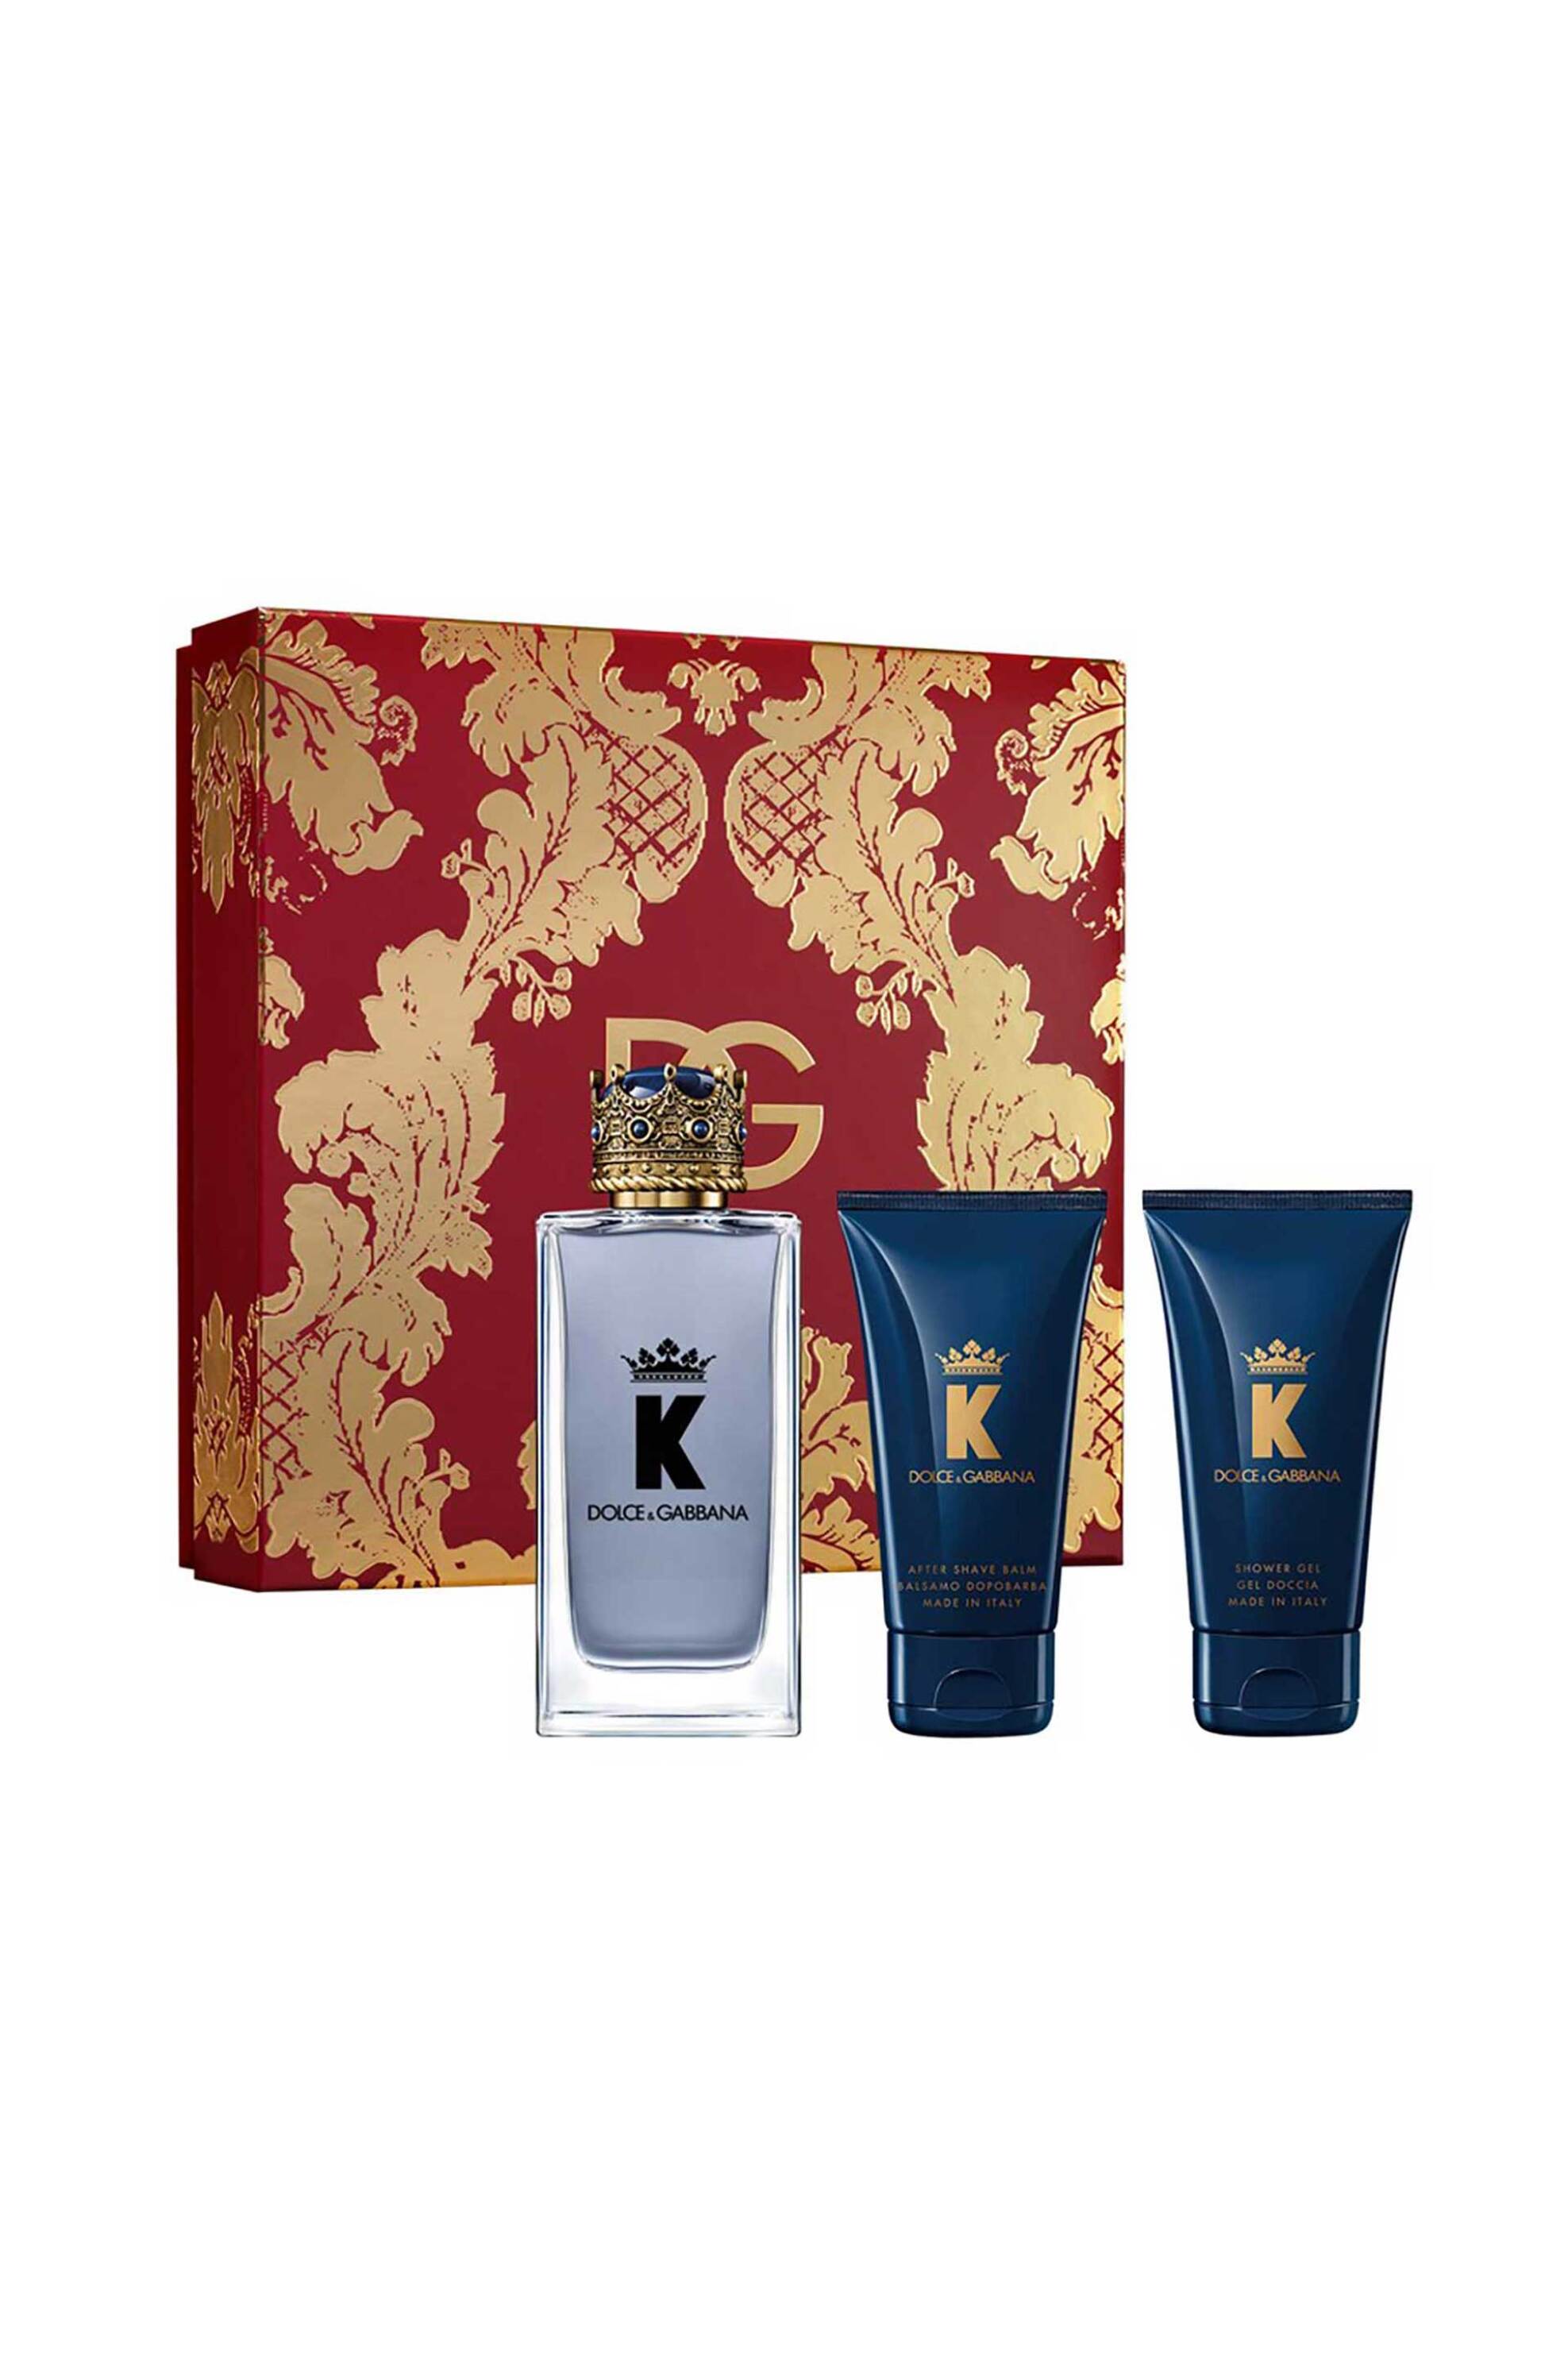 Προϊόντα Ομορφιάς > ΑΡΩΜΑΤΑ > Ανδρικά Αρώματα > Σετ Αρωμάτων Dolce&Gabbana K by Dolce&Gabbana Eau de Toilette Gift Set - P1KQ2C04